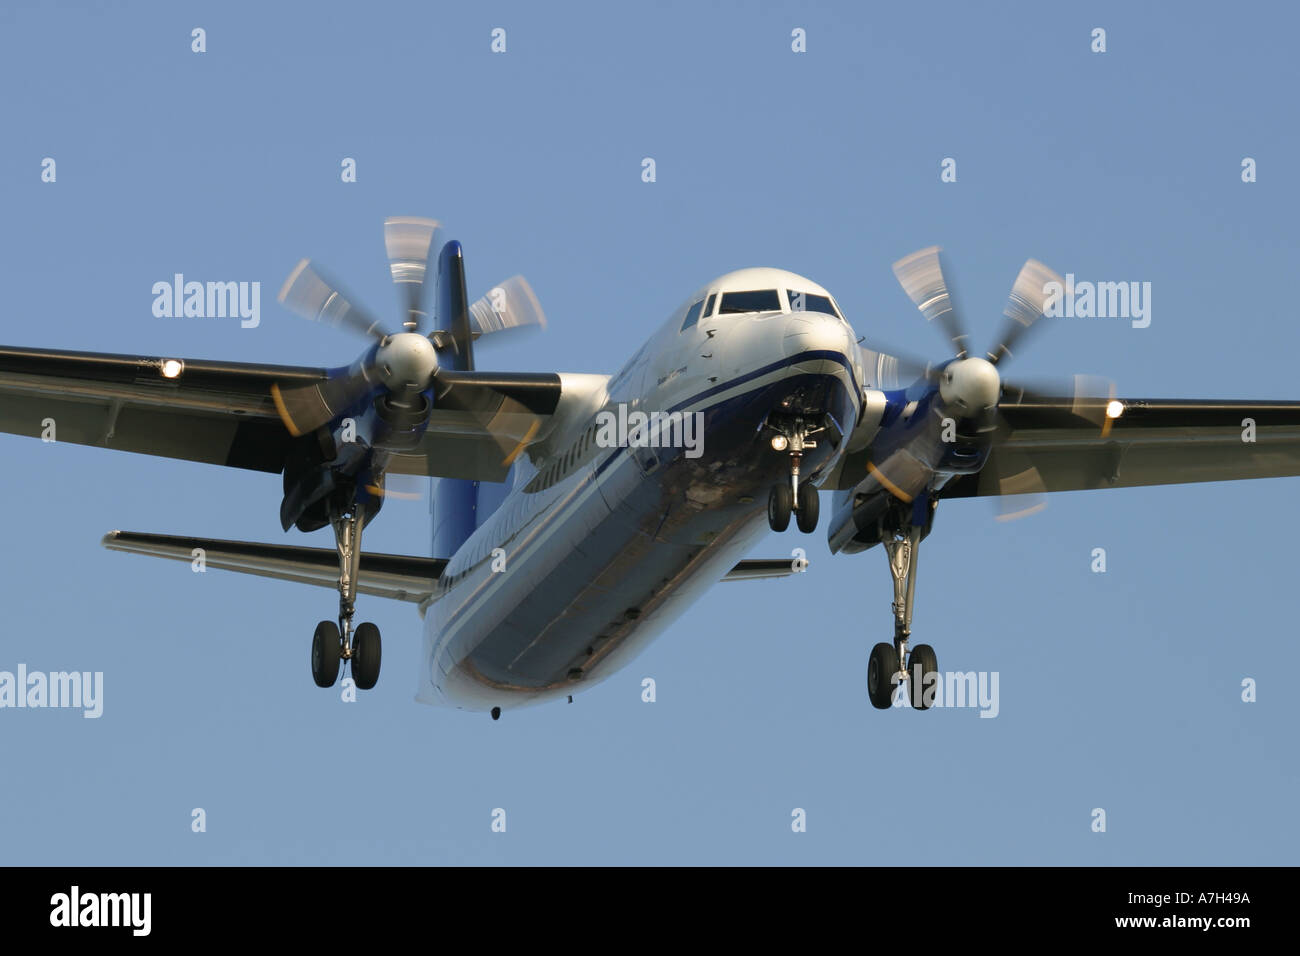 Fokker 50 VLM Airlines Stockfoto